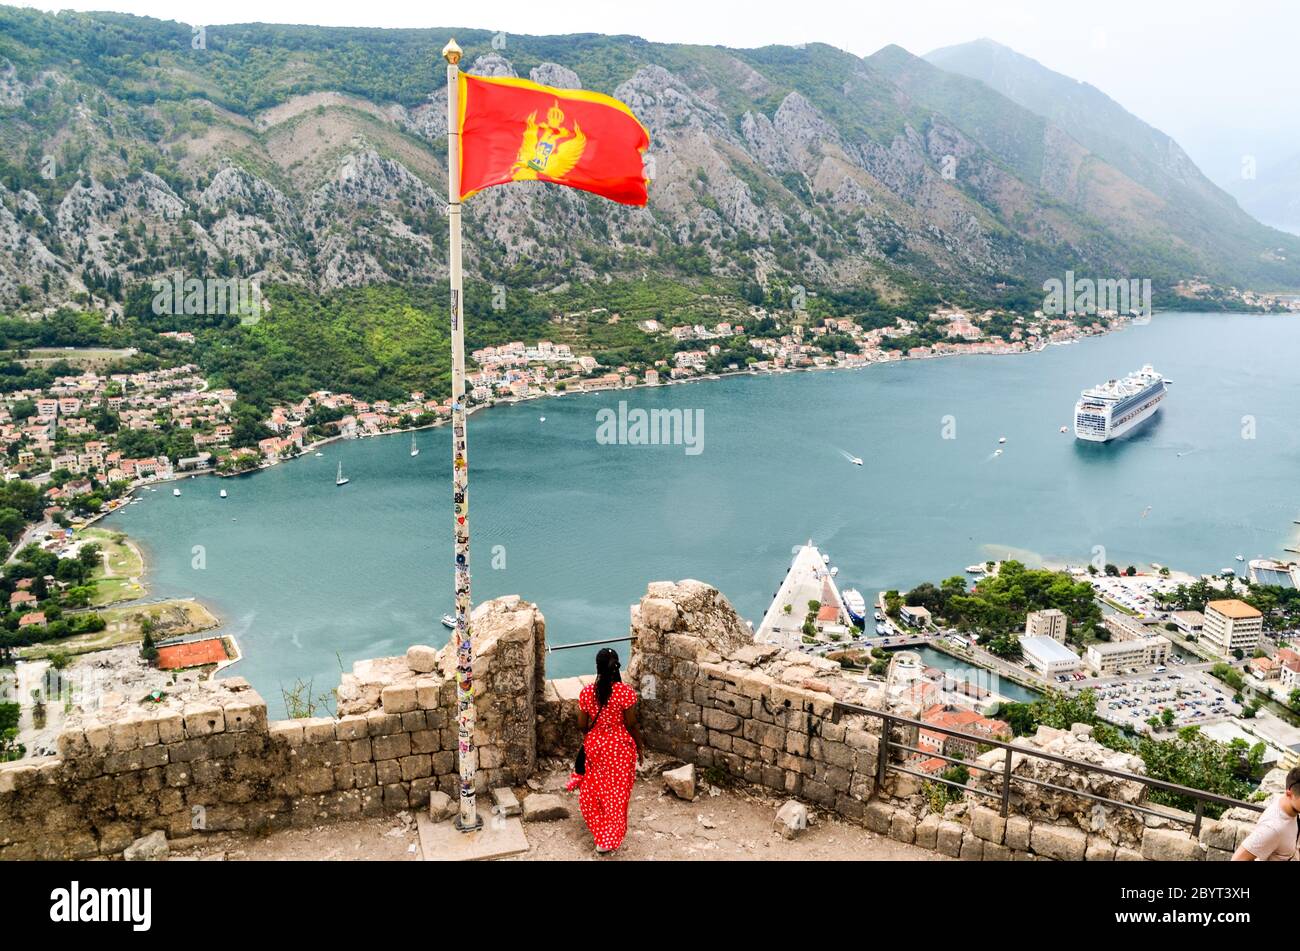 Donna in abito rosso con la bandiera rossa del Montenegro che domina una grande nave da crociera nella baia di Kotor, Montenegro Foto Stock